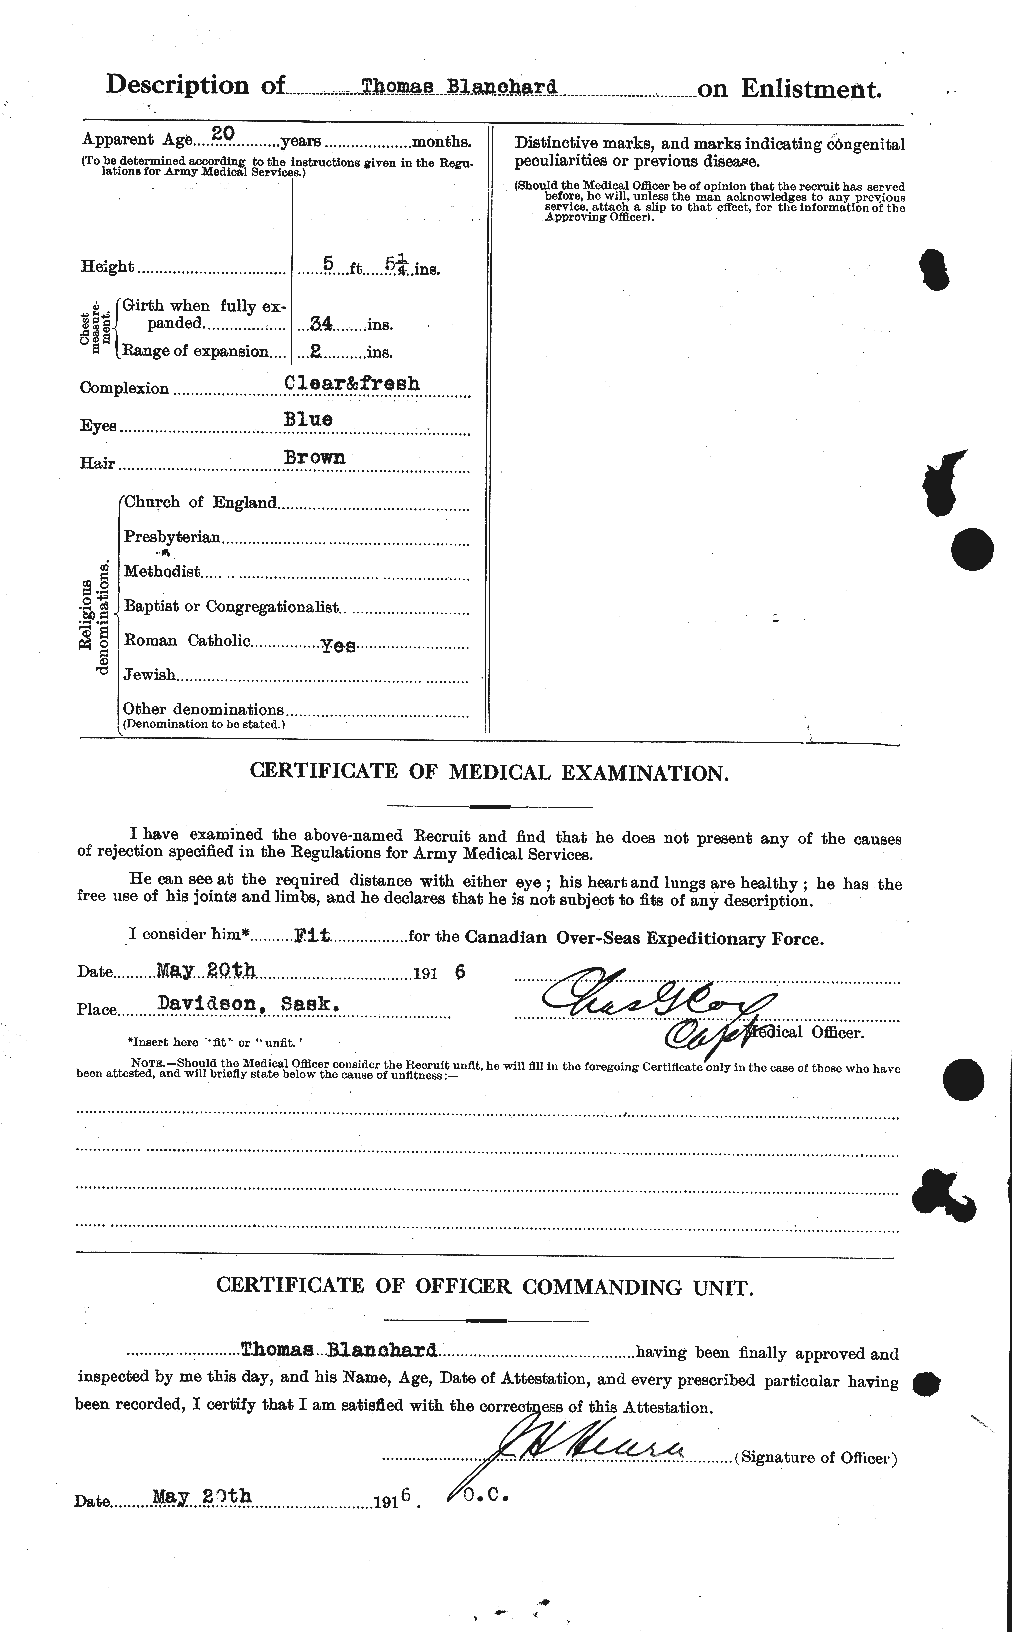 Dossiers du Personnel de la Première Guerre mondiale - CEC 240465b